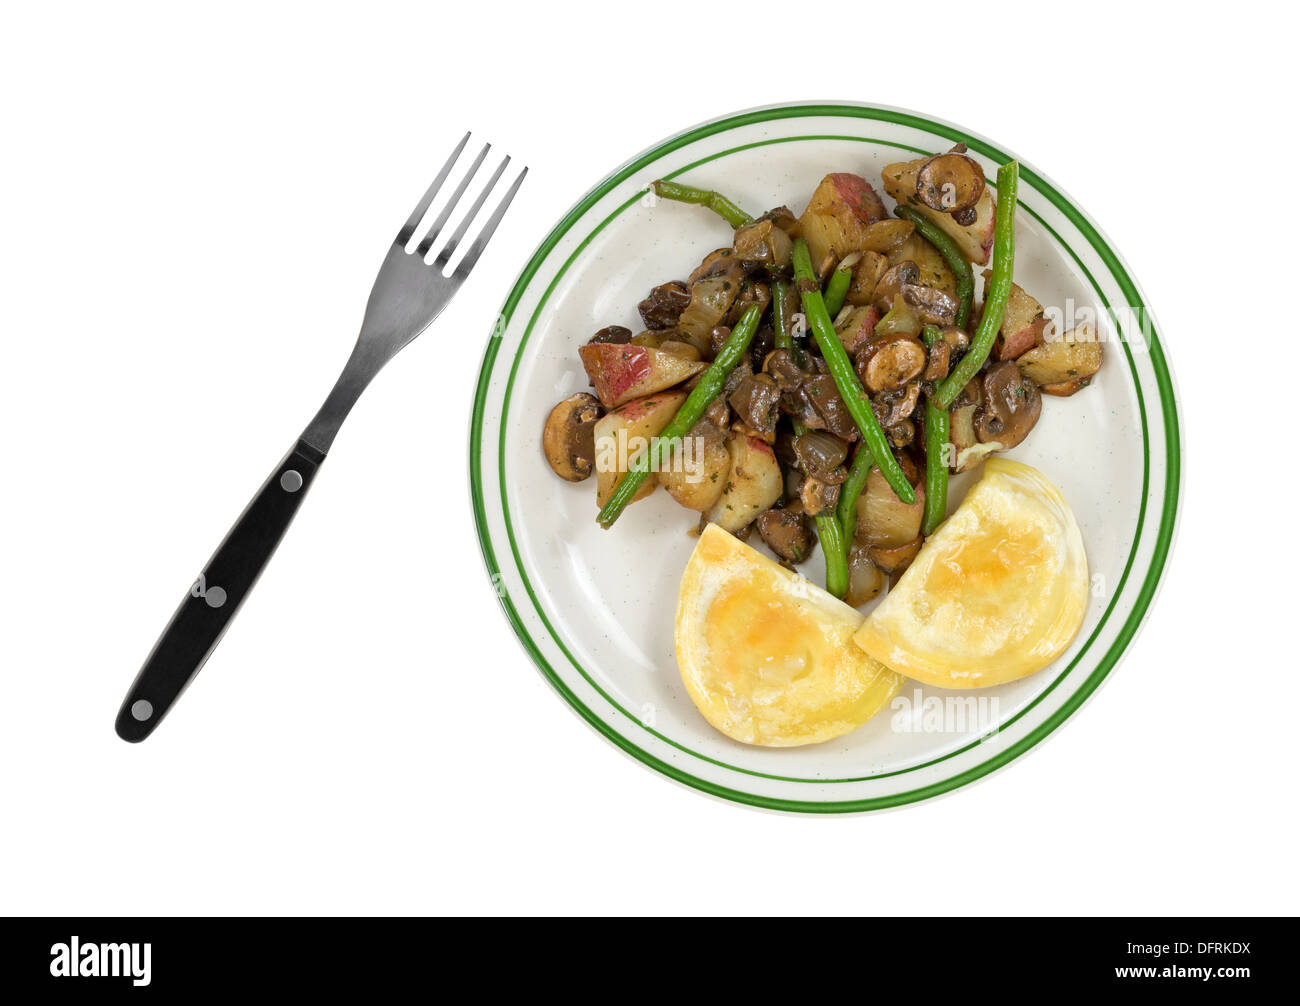 Vue de dessus d'un repas des pierogies avec haricots verts, champignons, oignons et pommes de terre rouge sur une assiette avec une fourchette sur le côté. Banque D'Images